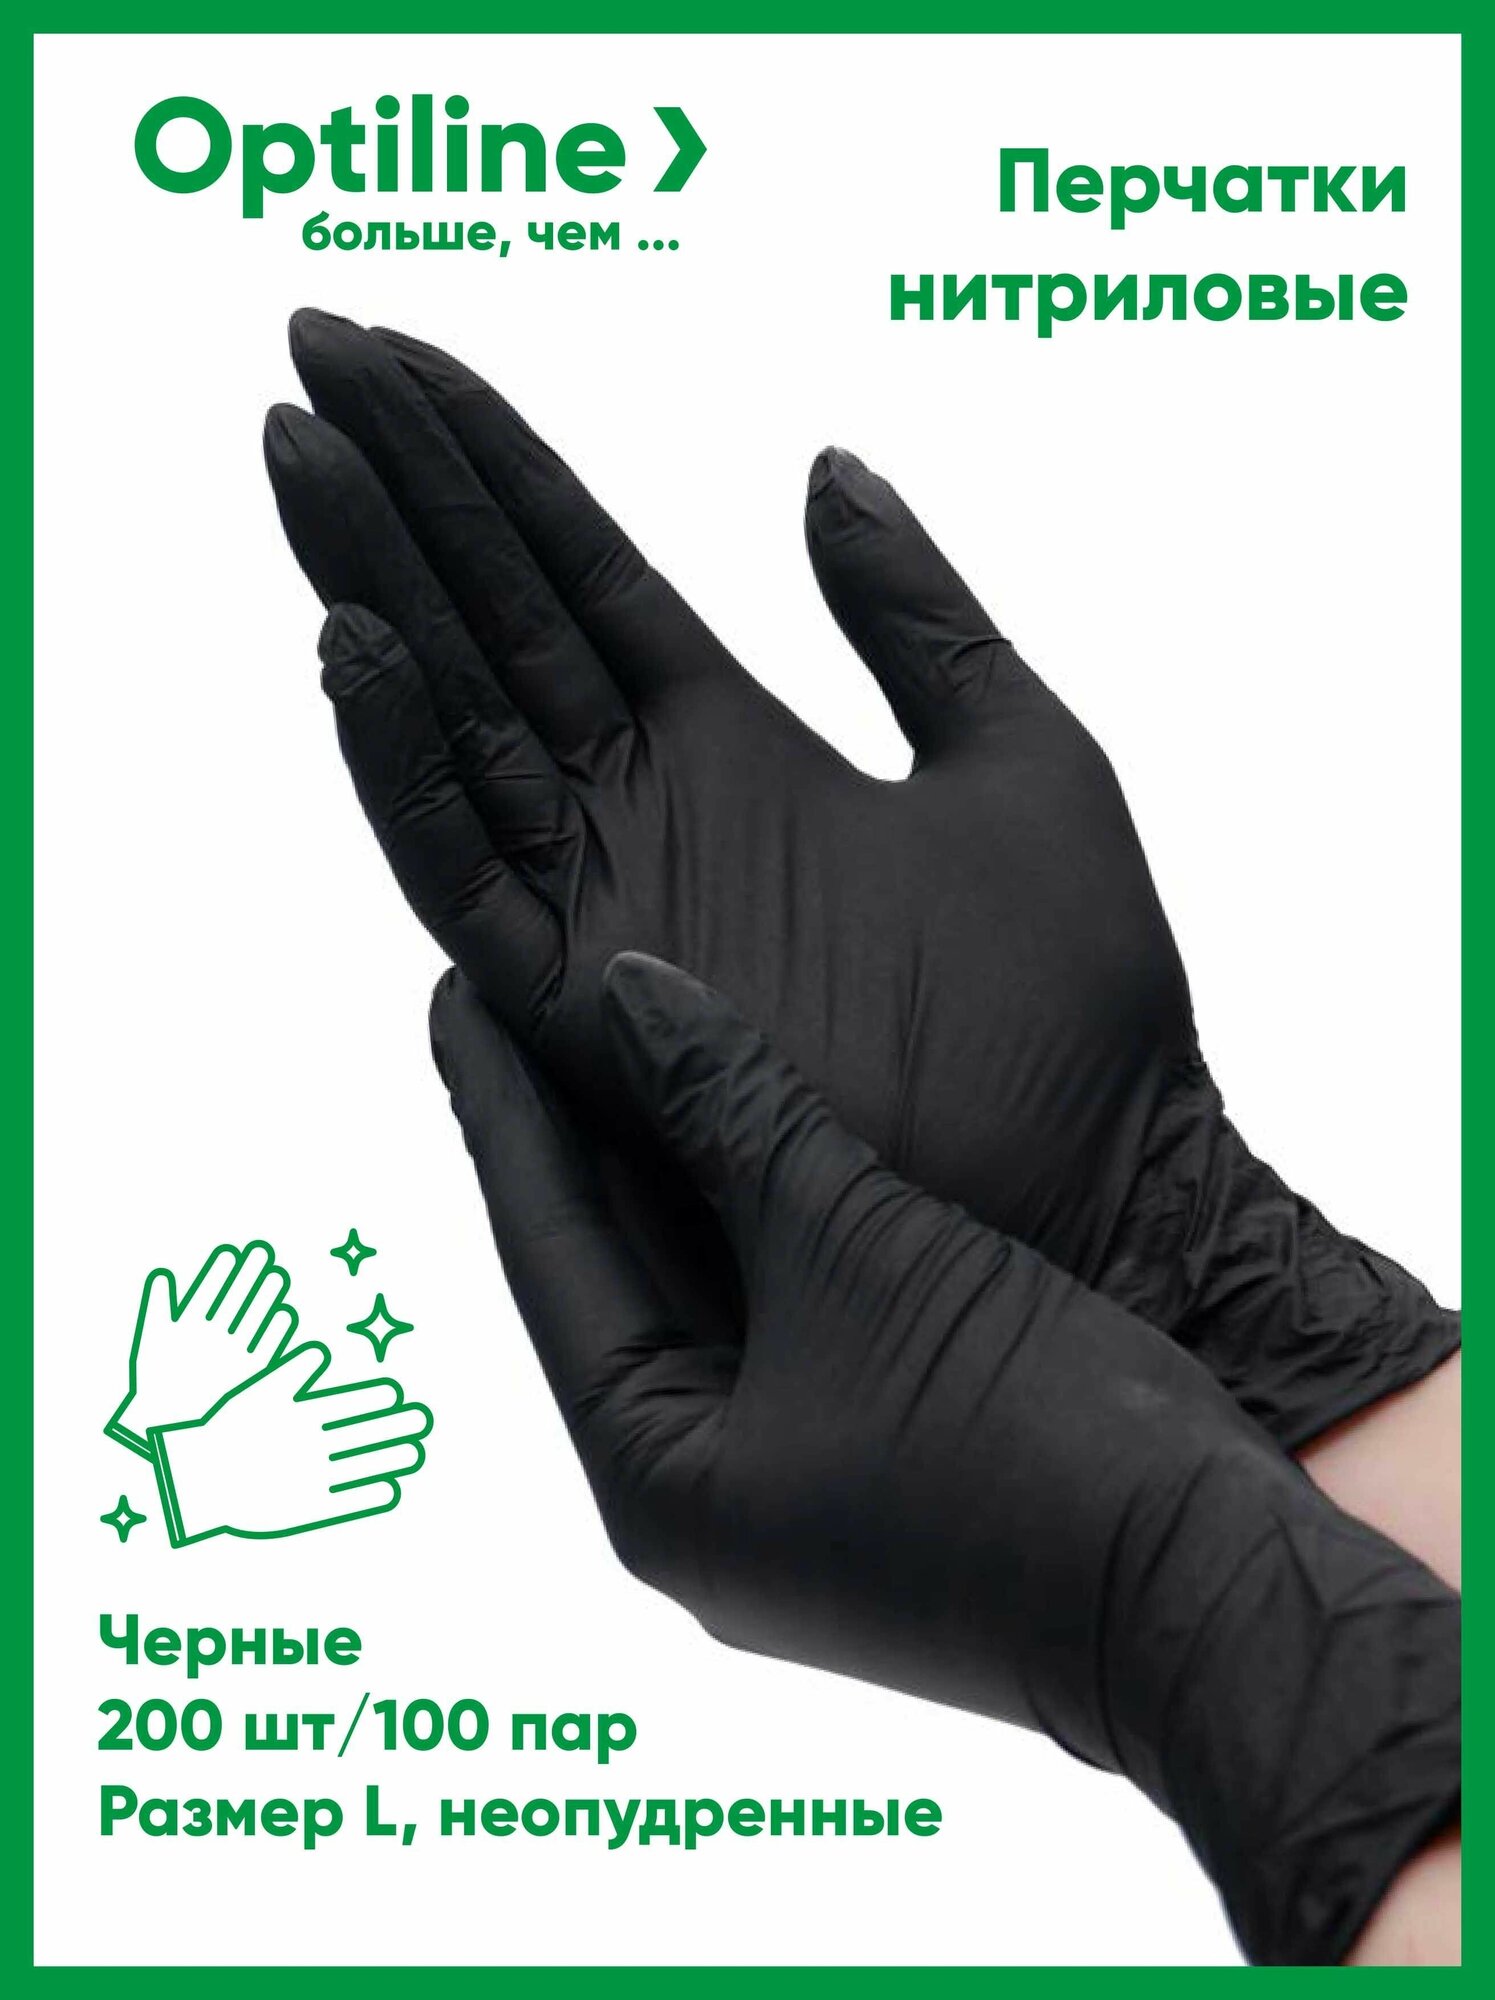 Перчатки одноразовые нитриловые OptiLine черные, размер L, 200 шт/100 пар